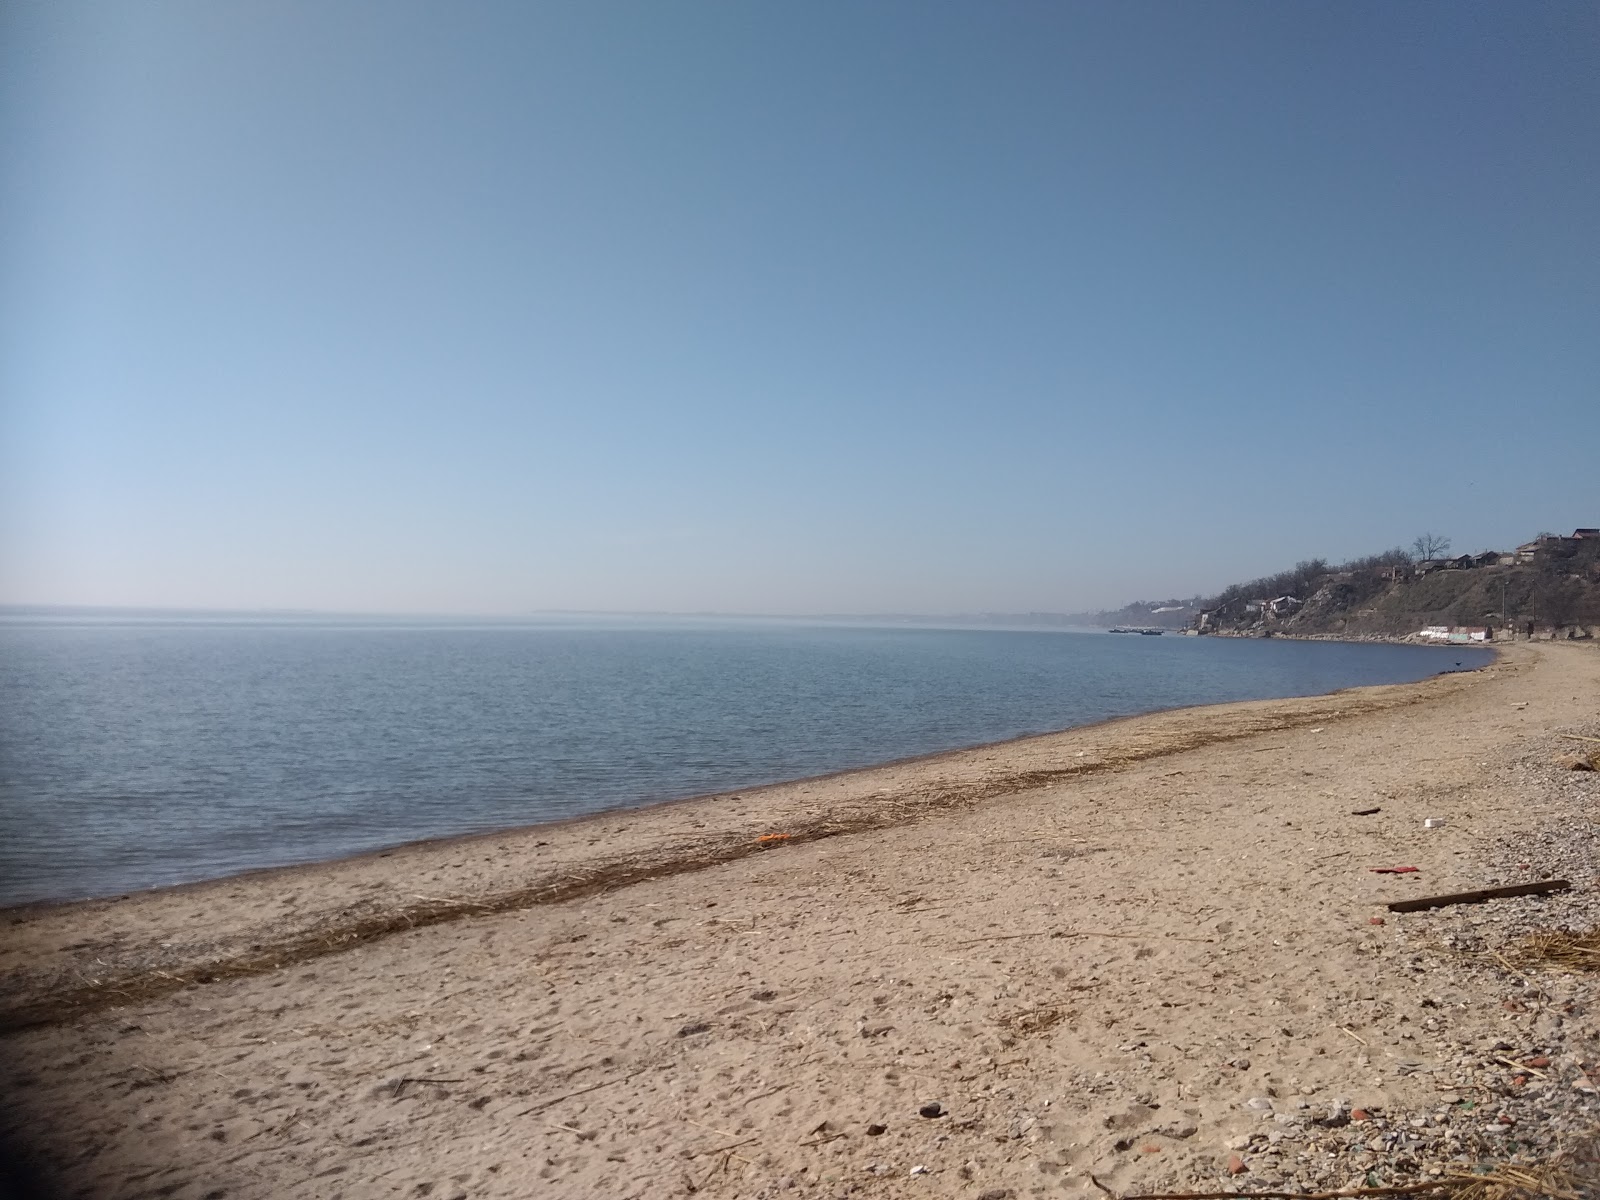 Sobachiy Plyazh'in fotoğrafı geniş plaj ile birlikte